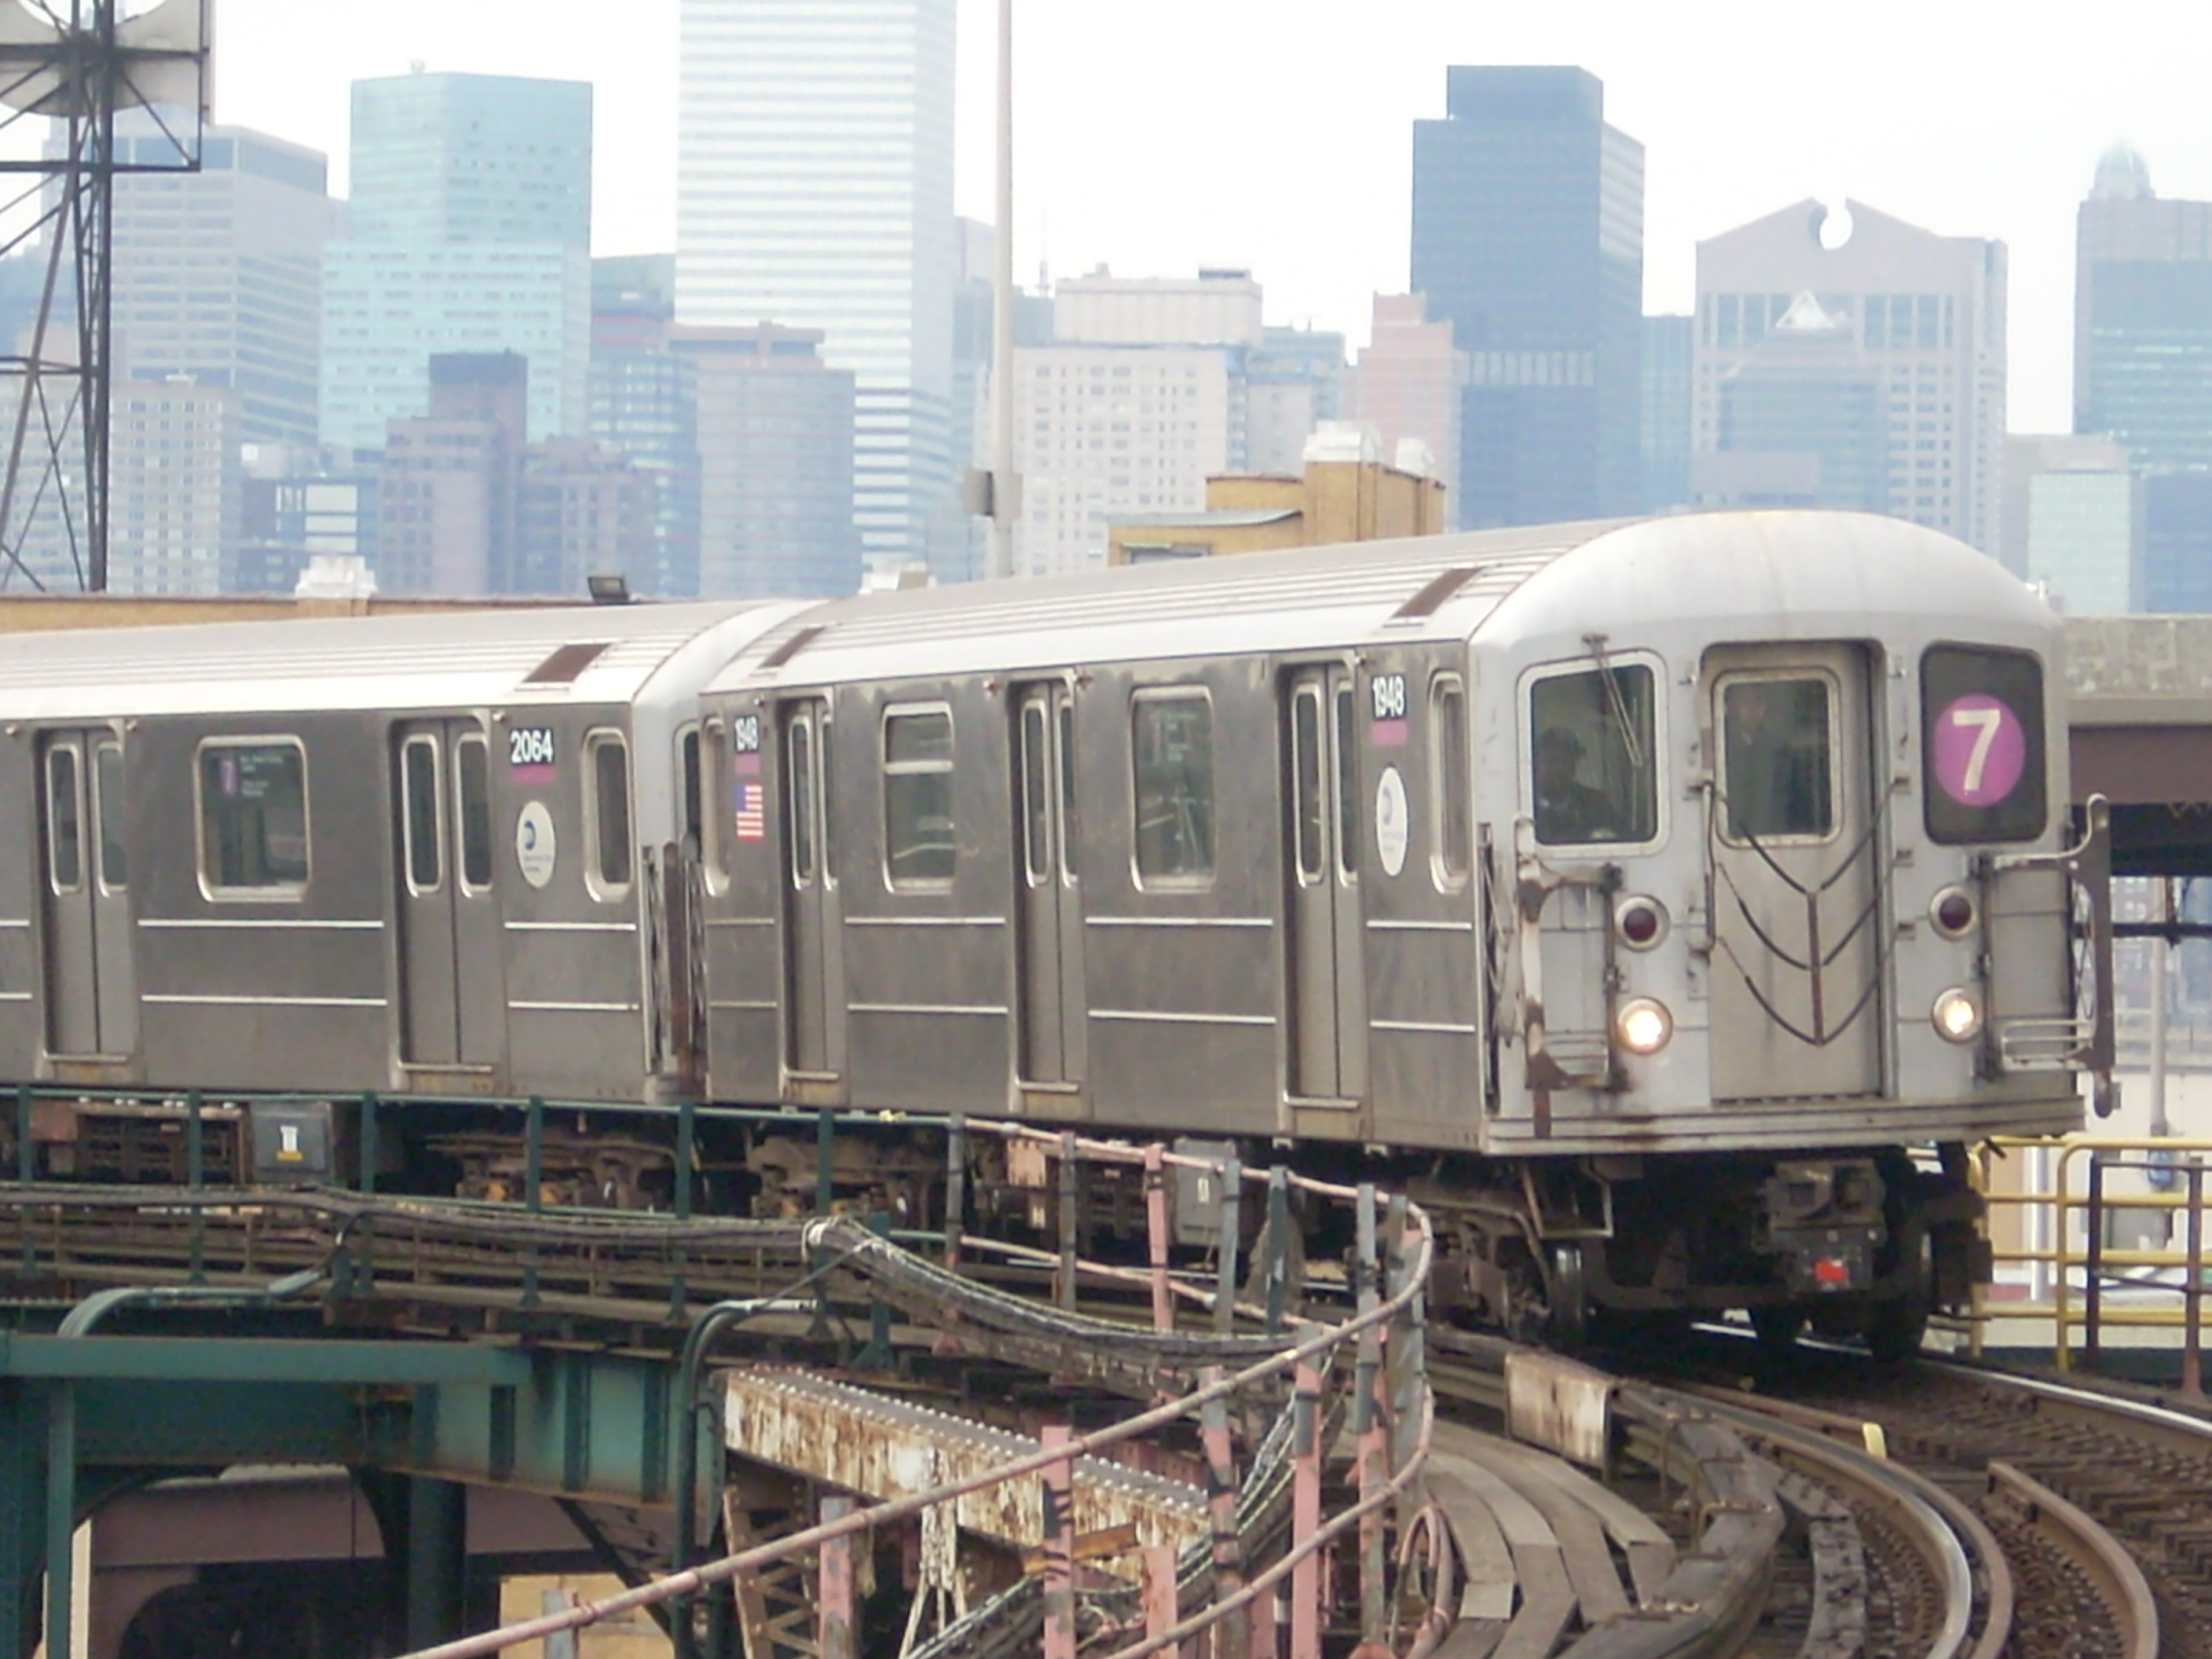 Train derails in New York, 11 injured